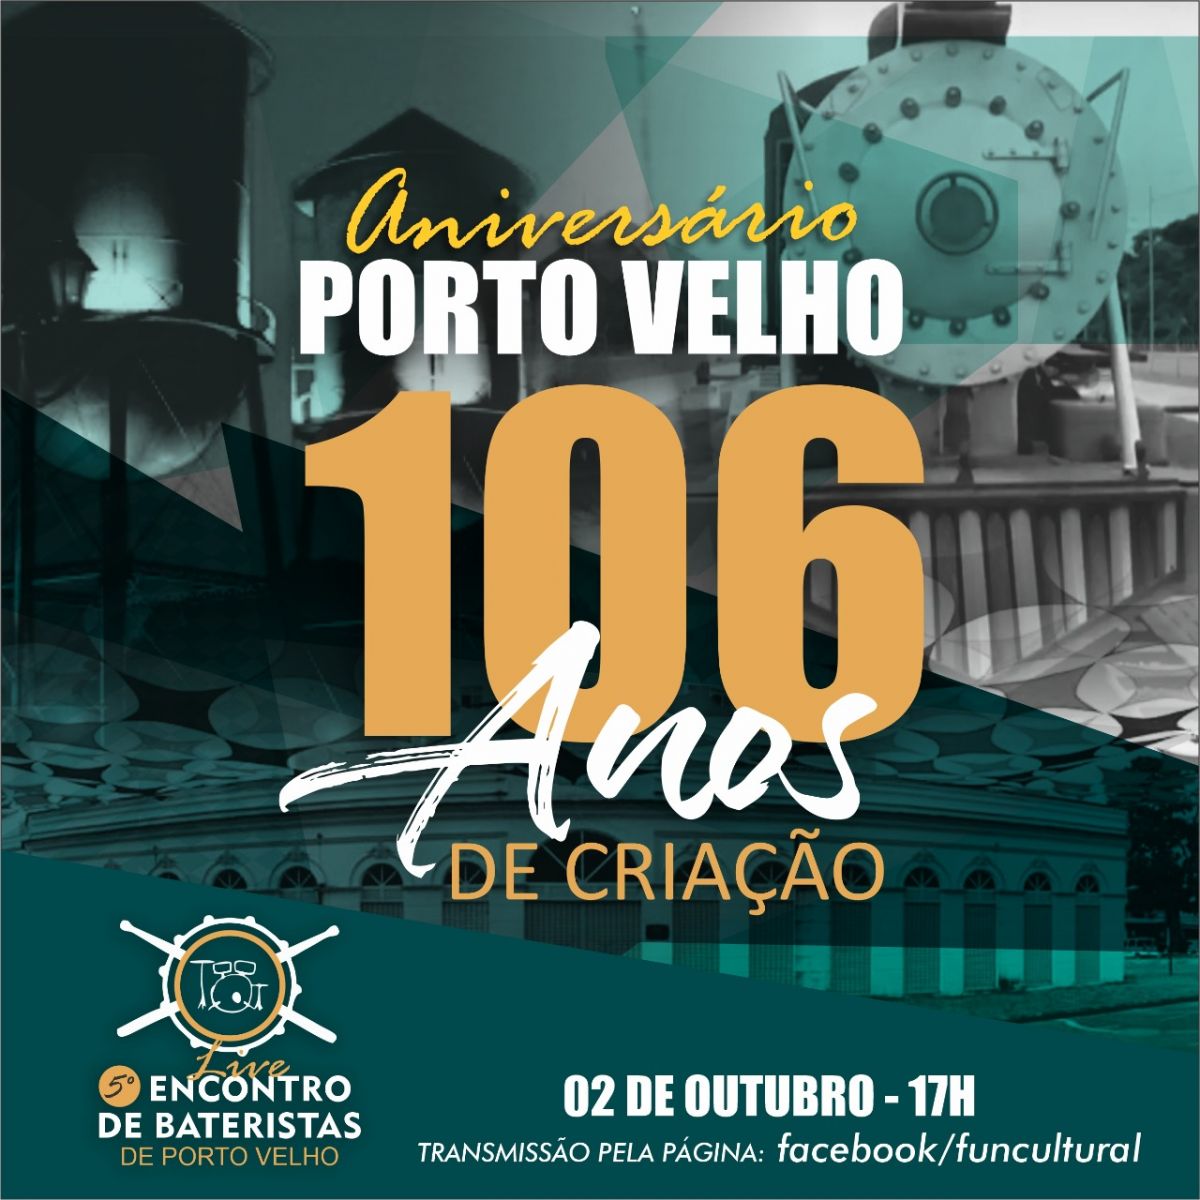 Lenha na fogueira: Porto Velho 106 anos - News Rondônia